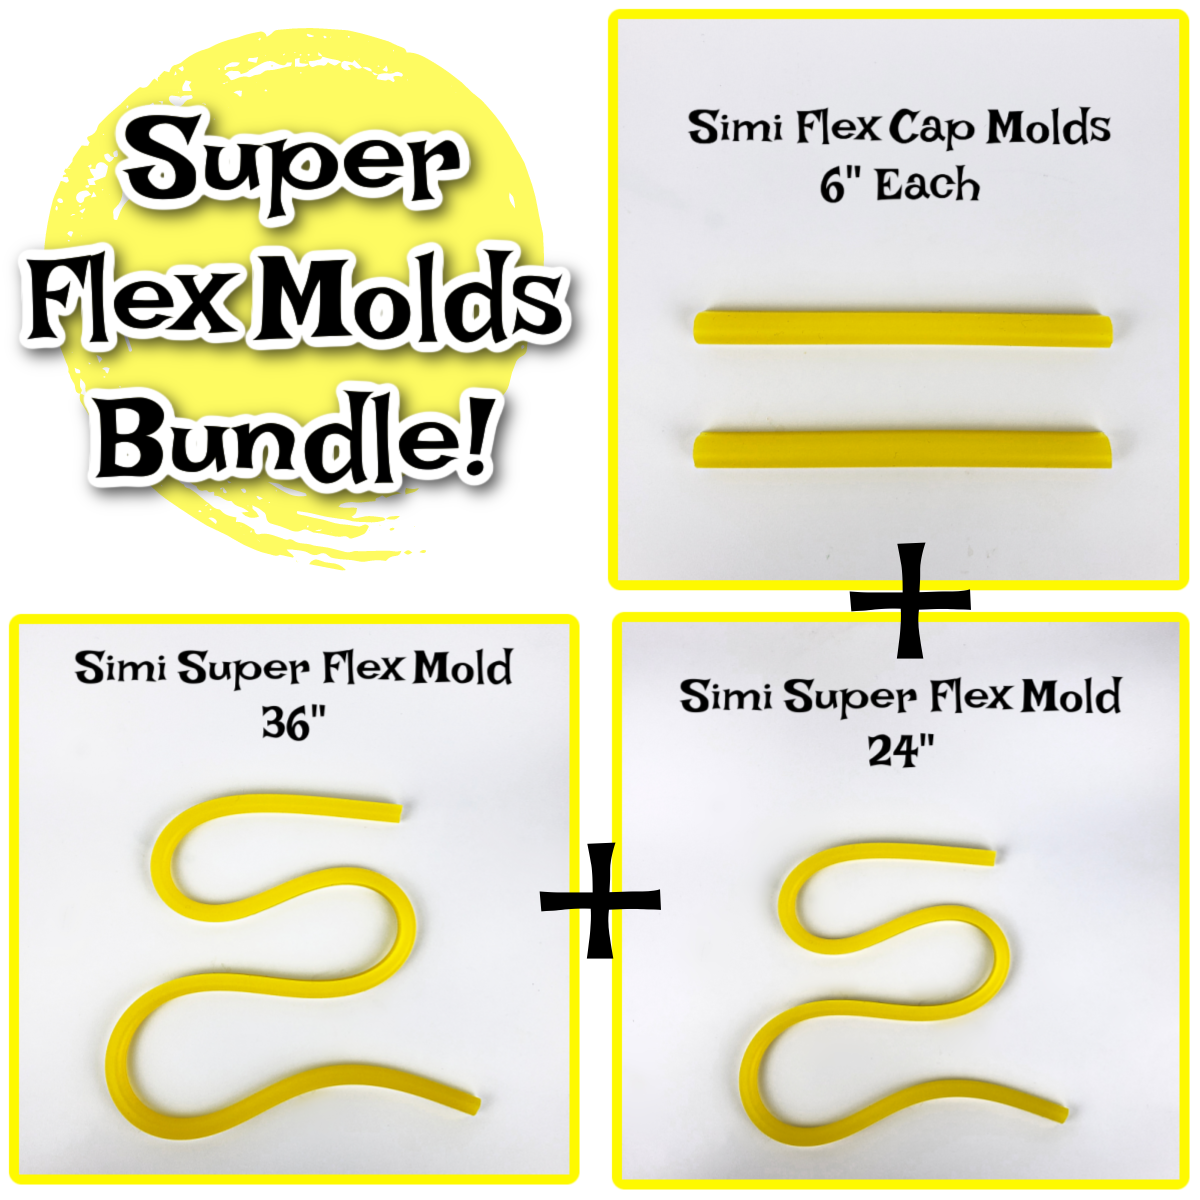 Simi Super Flex Molds Bundle